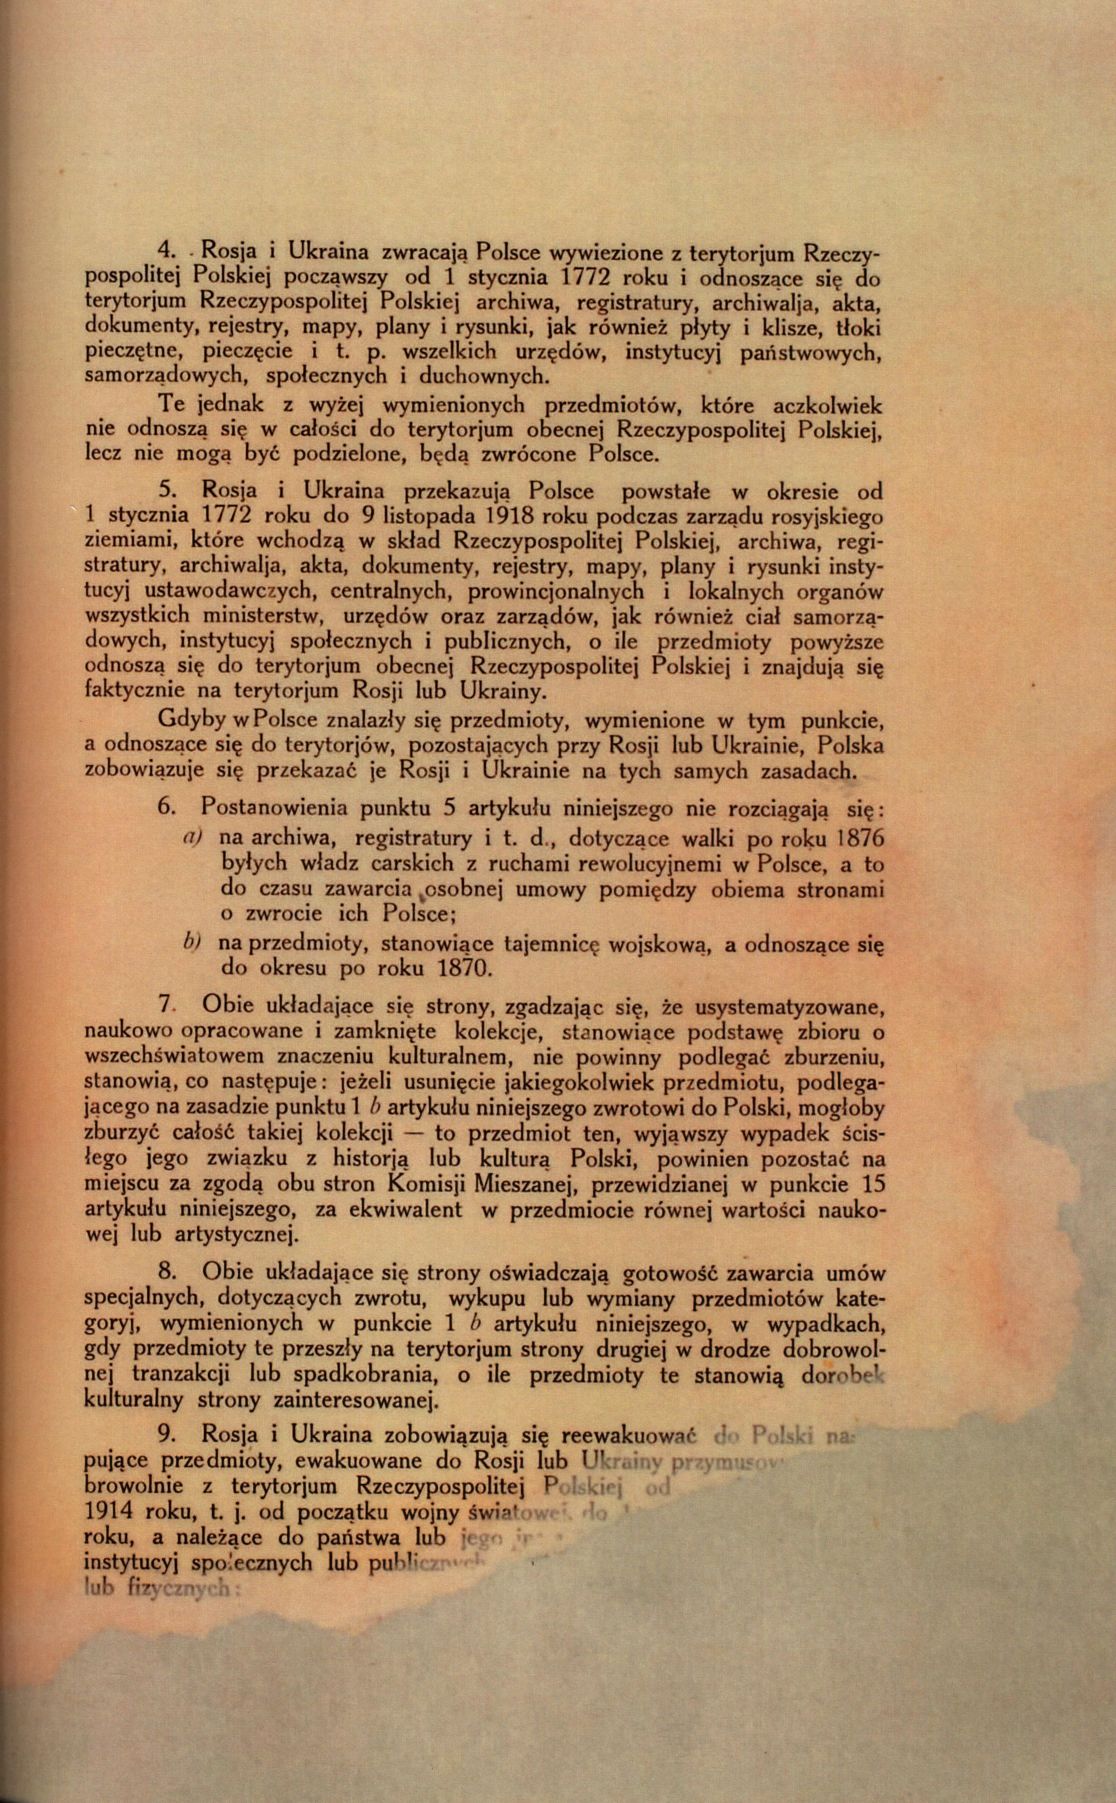 Traktat Pokoju między Polską a Rosją i Ukrainą podpisany w Rydze dnia 18 marca 1921 roku, s. 13, MSZ, sygn. 6739.